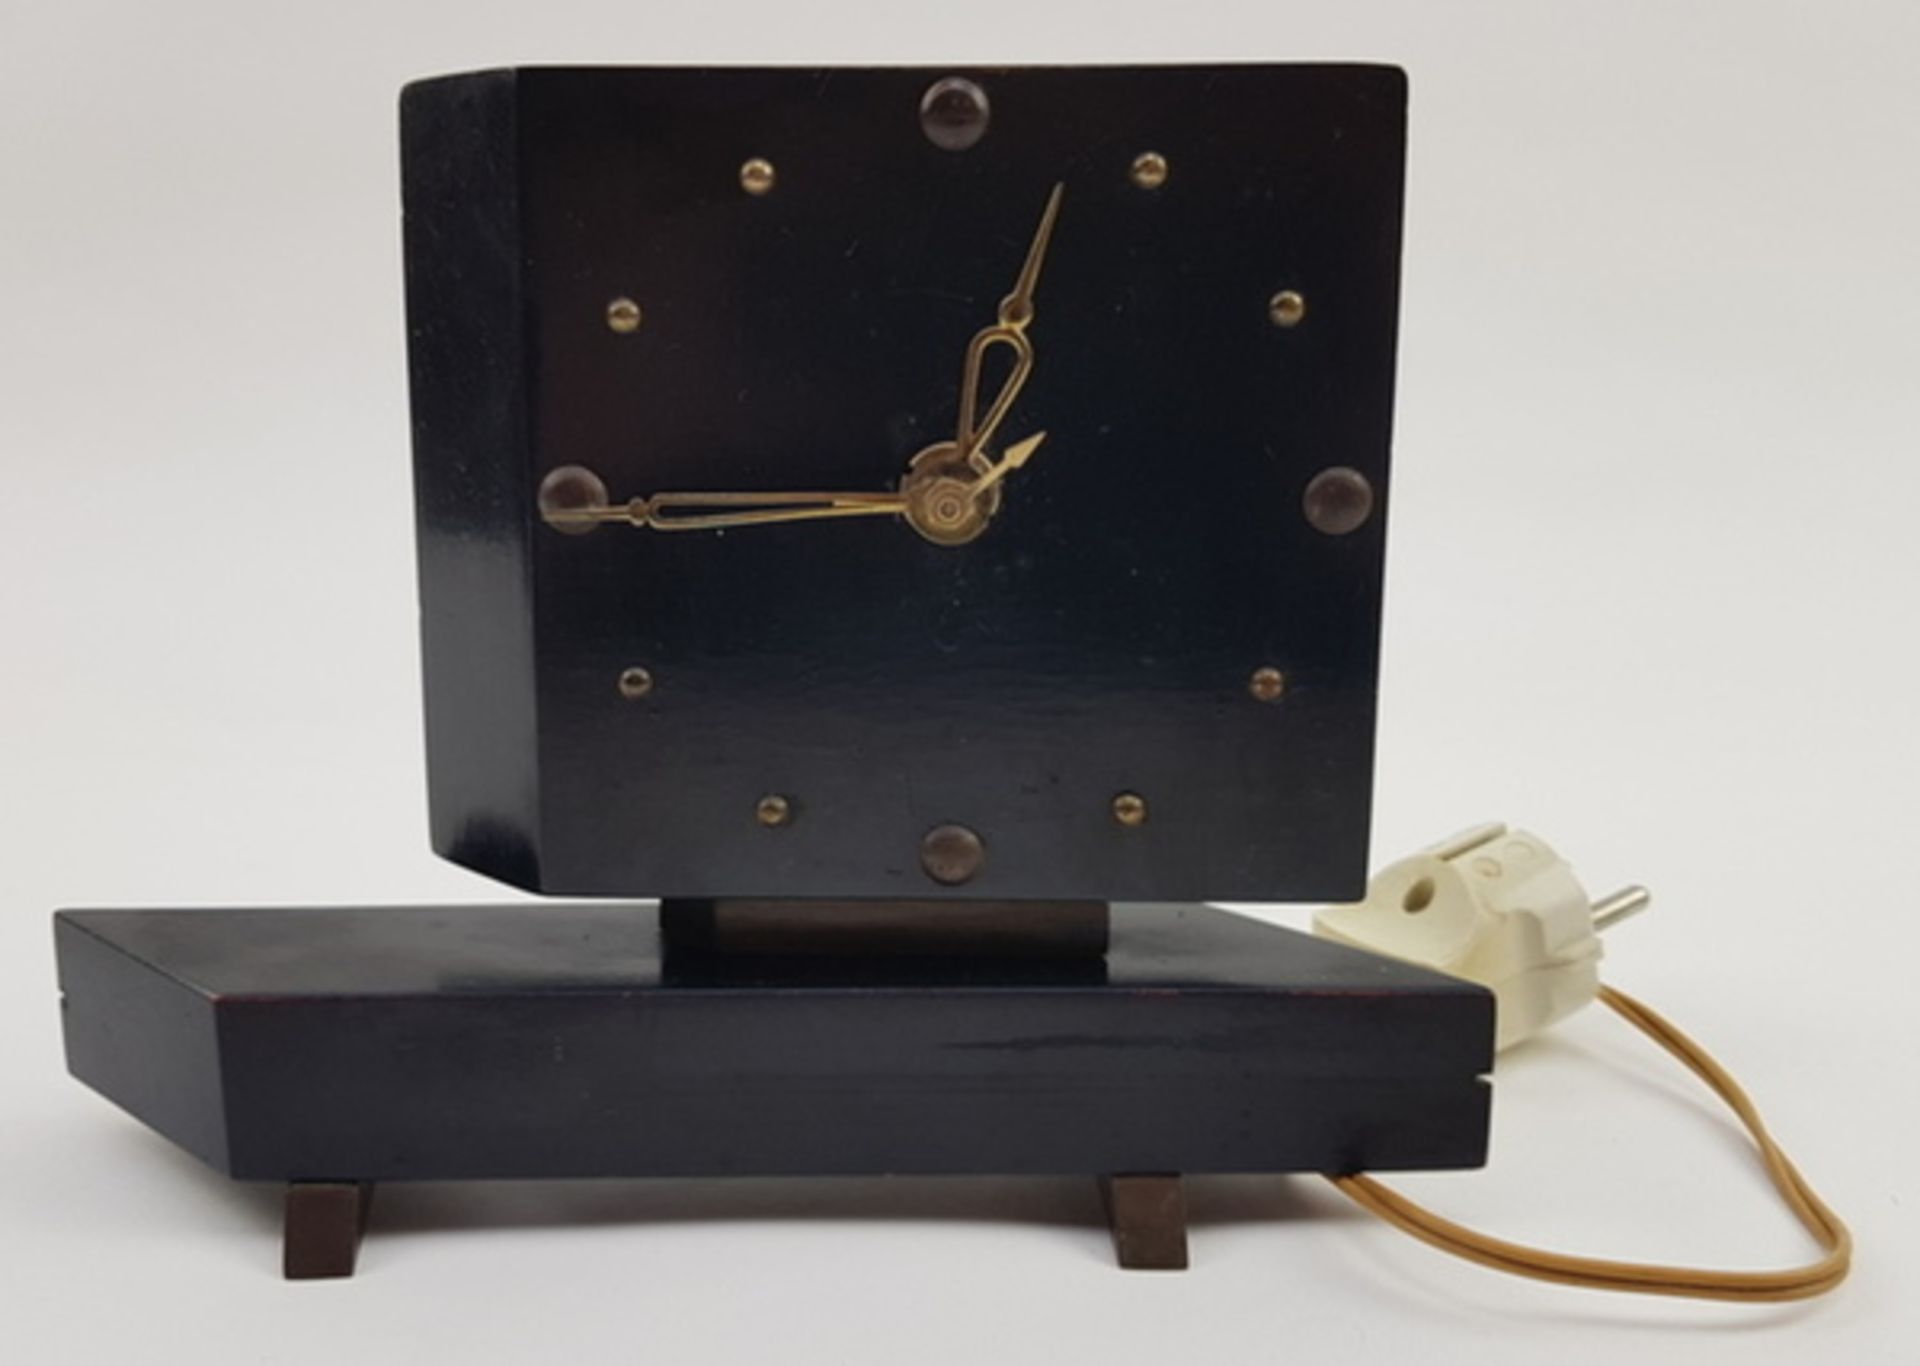 (Design) Houten klok met elektrisch uurwerk, asymetrische vormgeving jaren 50Houten klok met